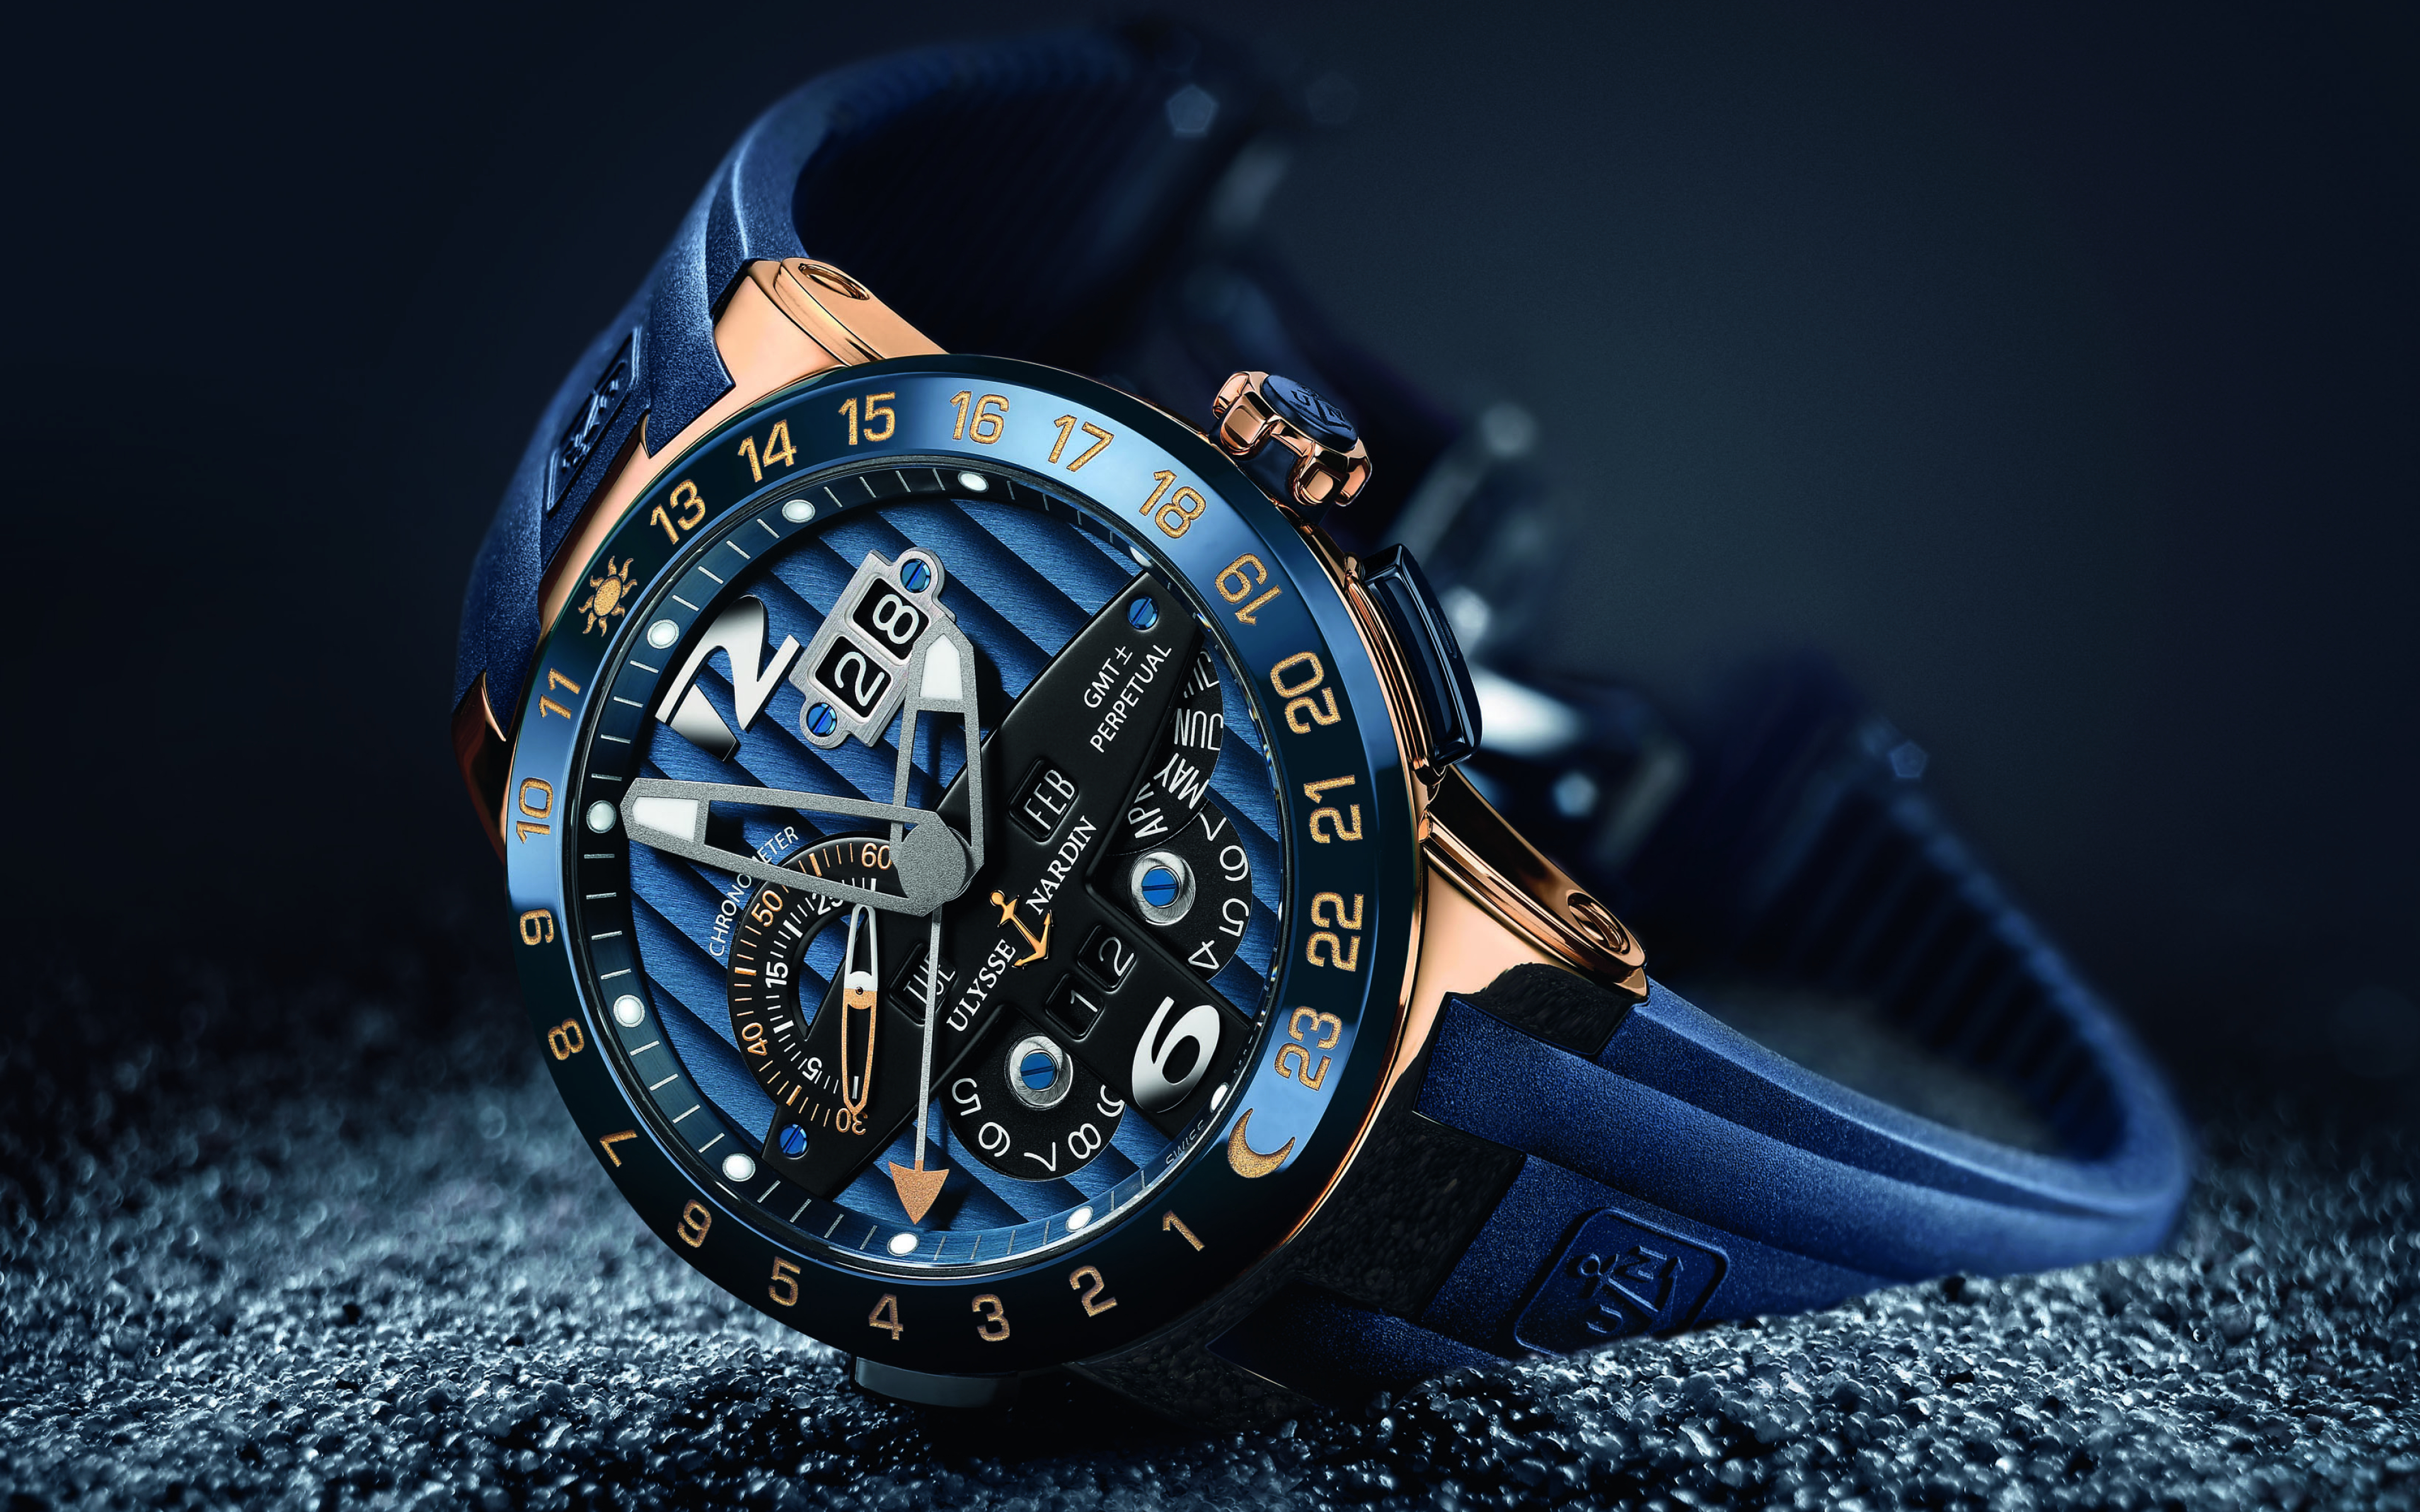 См часы наручные. Часы Улисс Нордин. Улисс Нордин часы мужские. Швейцарские часы мужские Ulysse Nardin. Часы Луис Нардин синие.